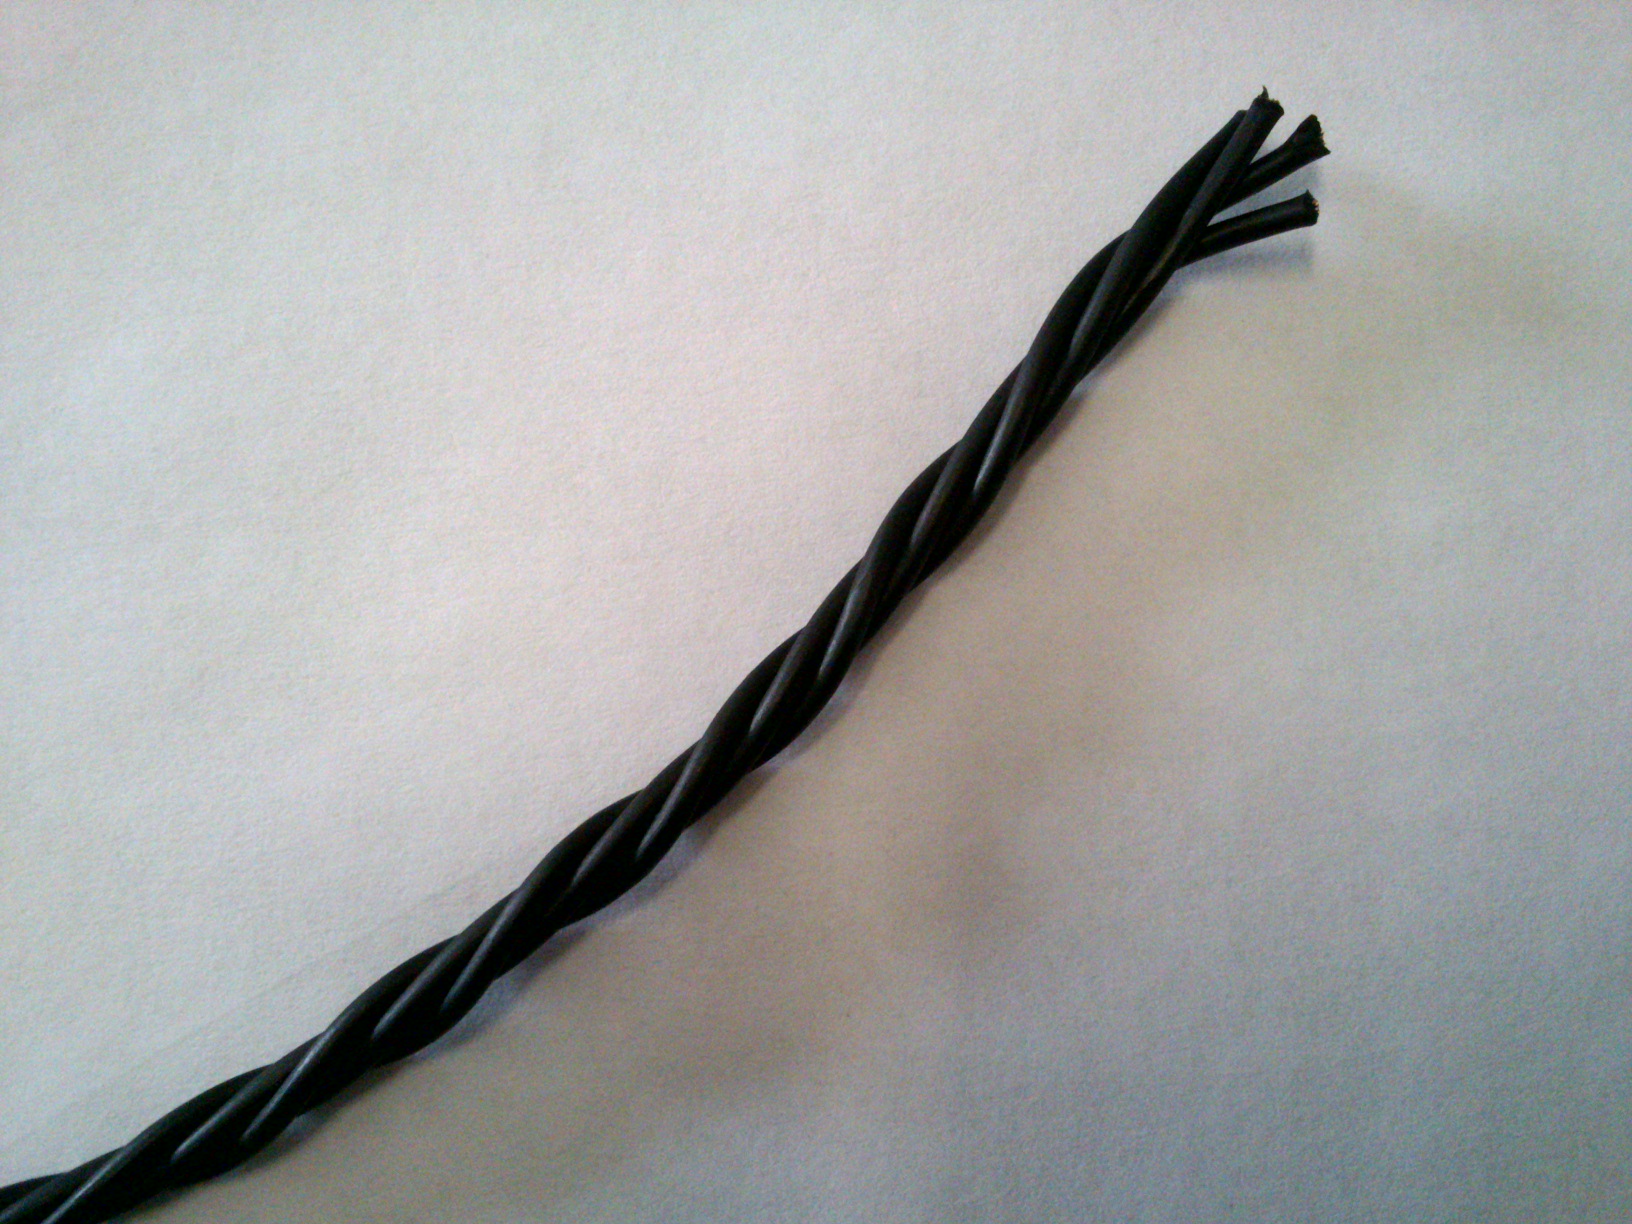 Провод датчика длины стрелы ОНК-140, ОНК-160, провод для датчика длины стрелы, датчик длины стрелы онк кабель, четырехжильная коса